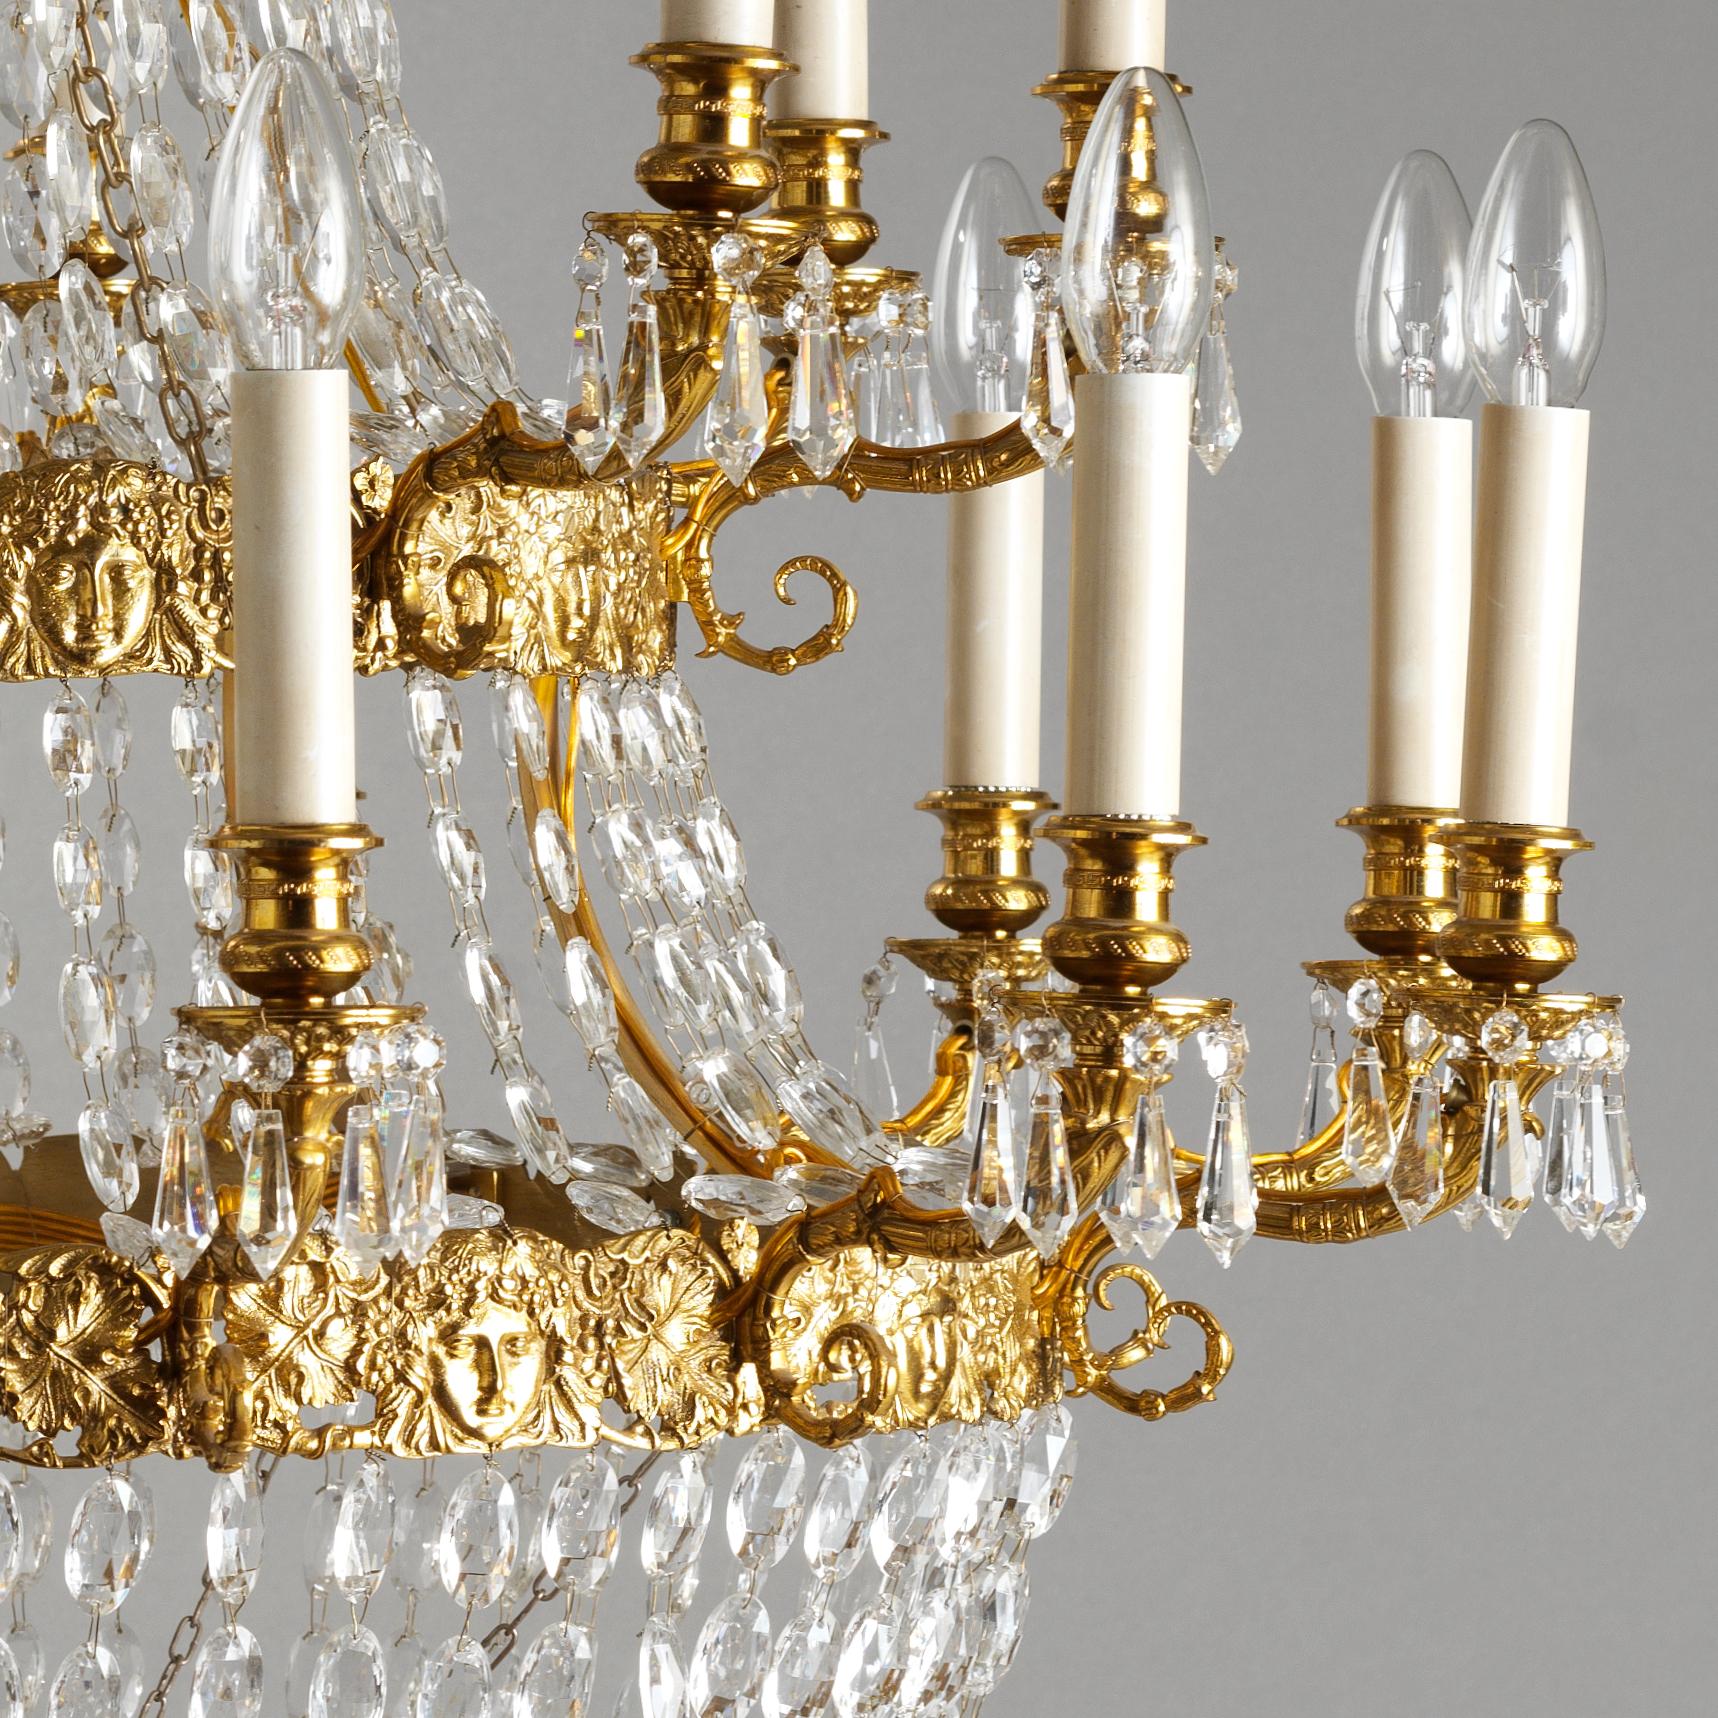 Ce lustre de style Empire français en bronze doré et cristal de Gherardo Degli Albizzi comporte vingt lumières et présente des détails artisanaux de haute qualité.
Les couronnes supérieures se caractérisent par une riche décoration végétale avec des